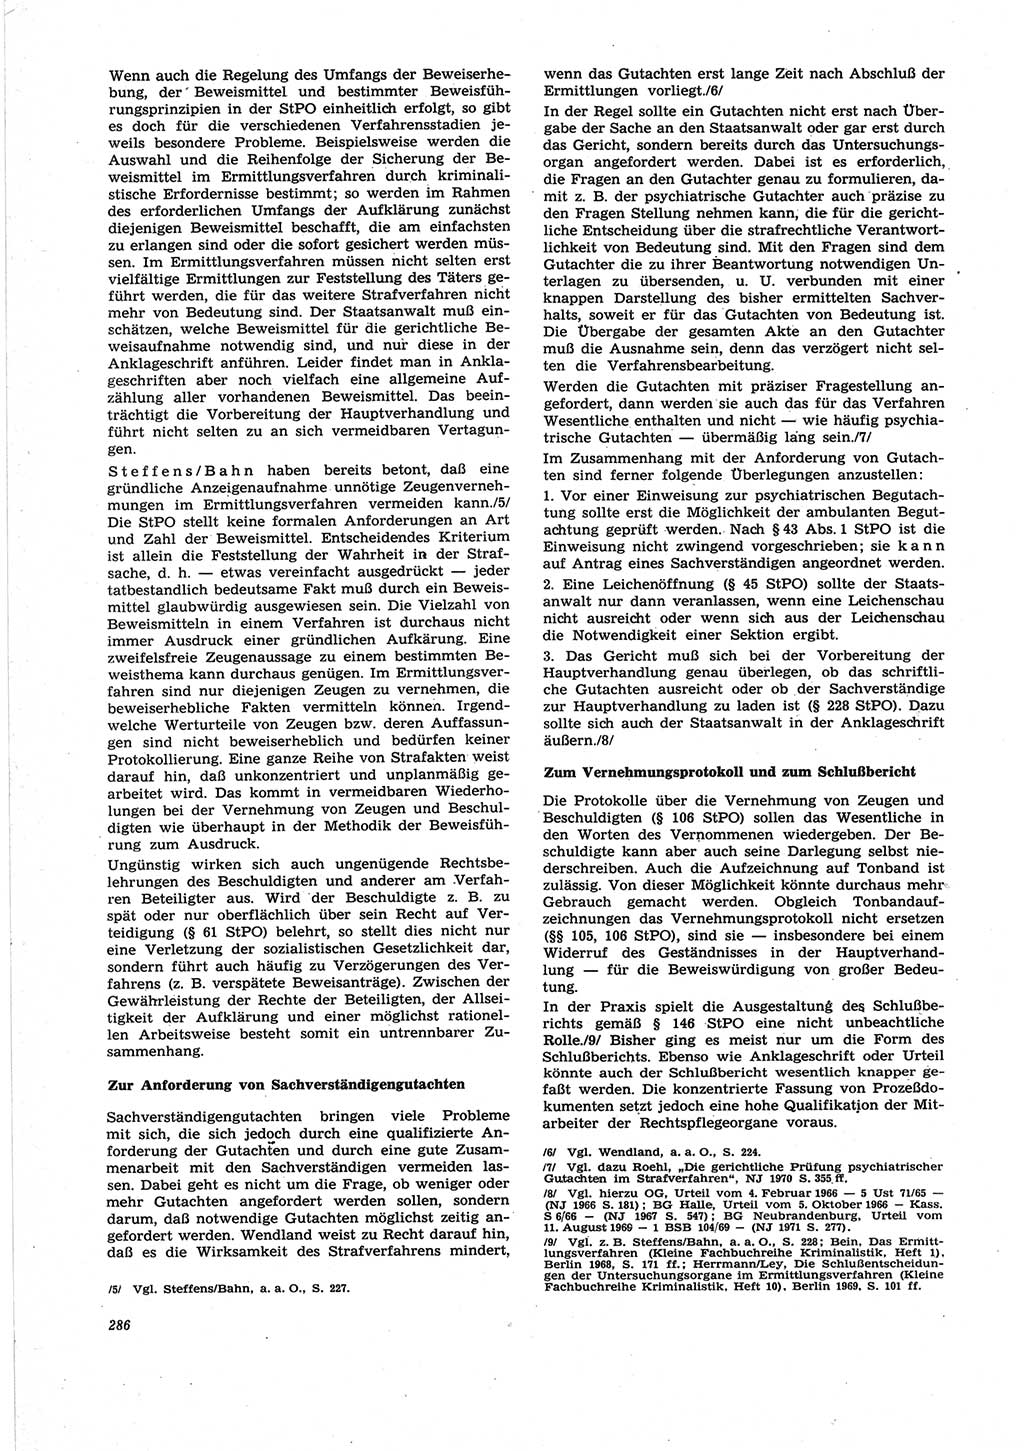 Neue Justiz (NJ), Zeitschrift für Recht und Rechtswissenschaft [Deutsche Demokratische Republik (DDR)], 25. Jahrgang 1971, Seite 286 (NJ DDR 1971, S. 286)